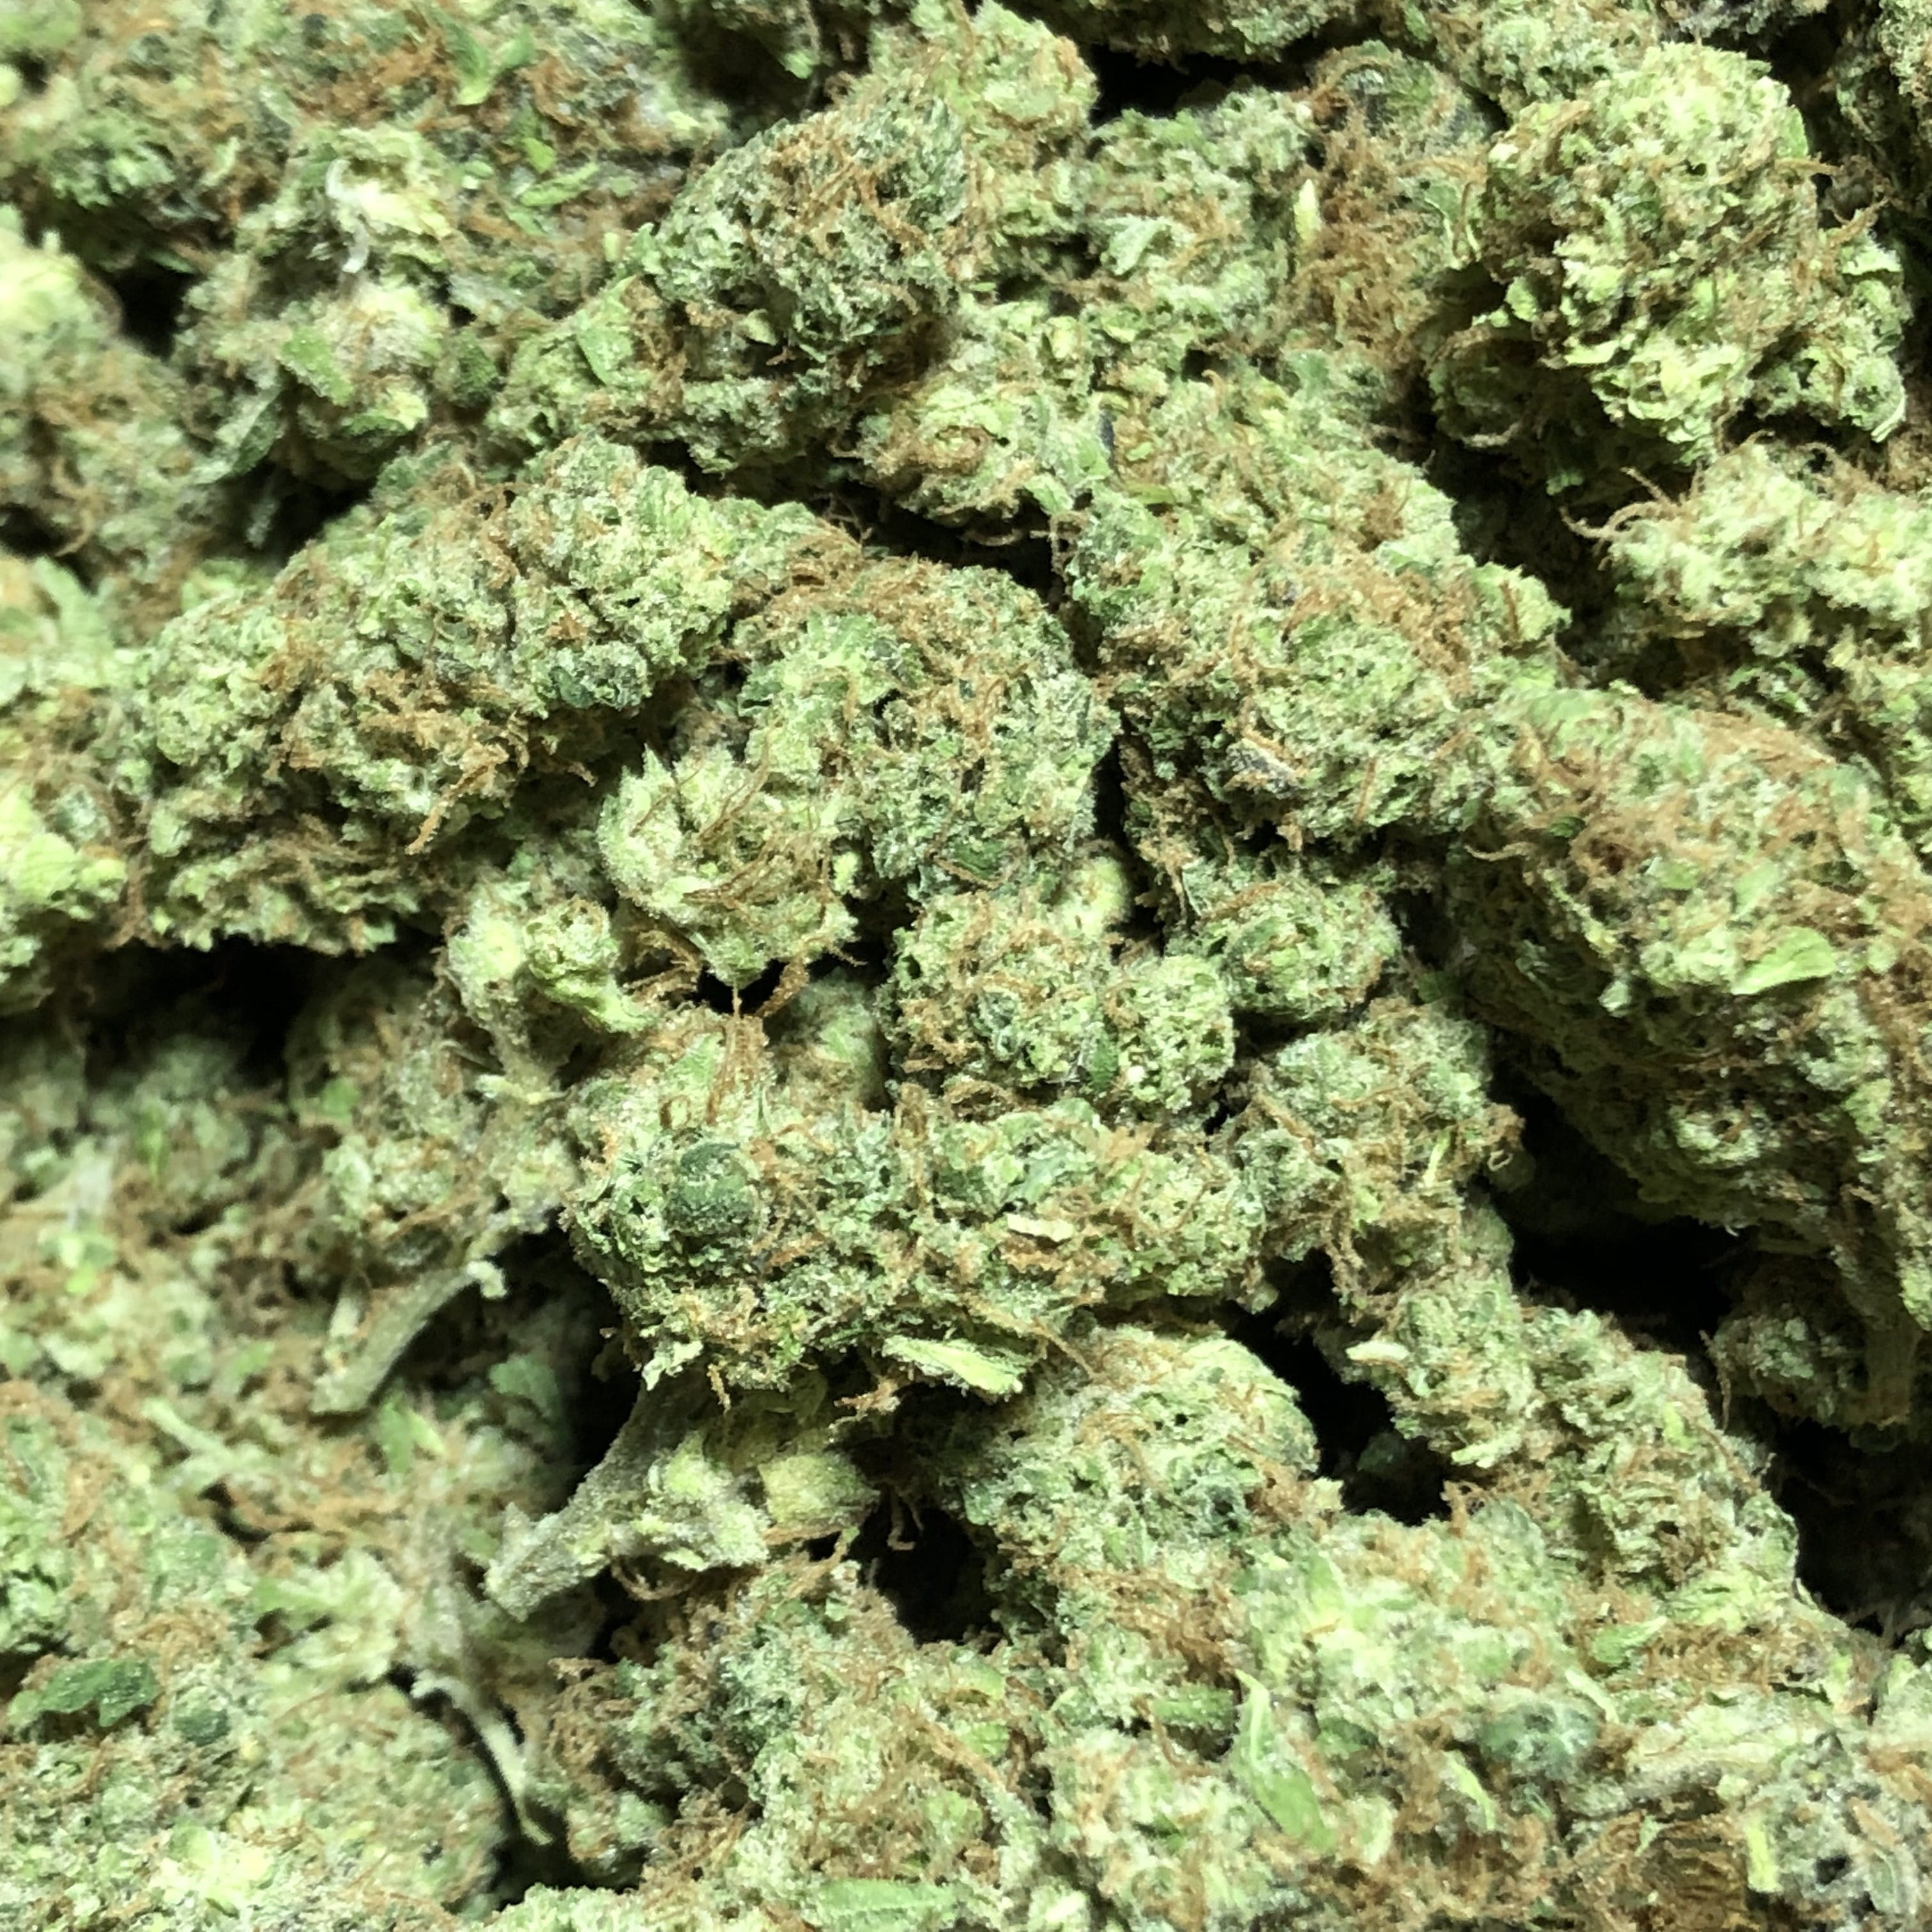 marijuana-dispensaries-multnomah-greens-in-portland-chiesel